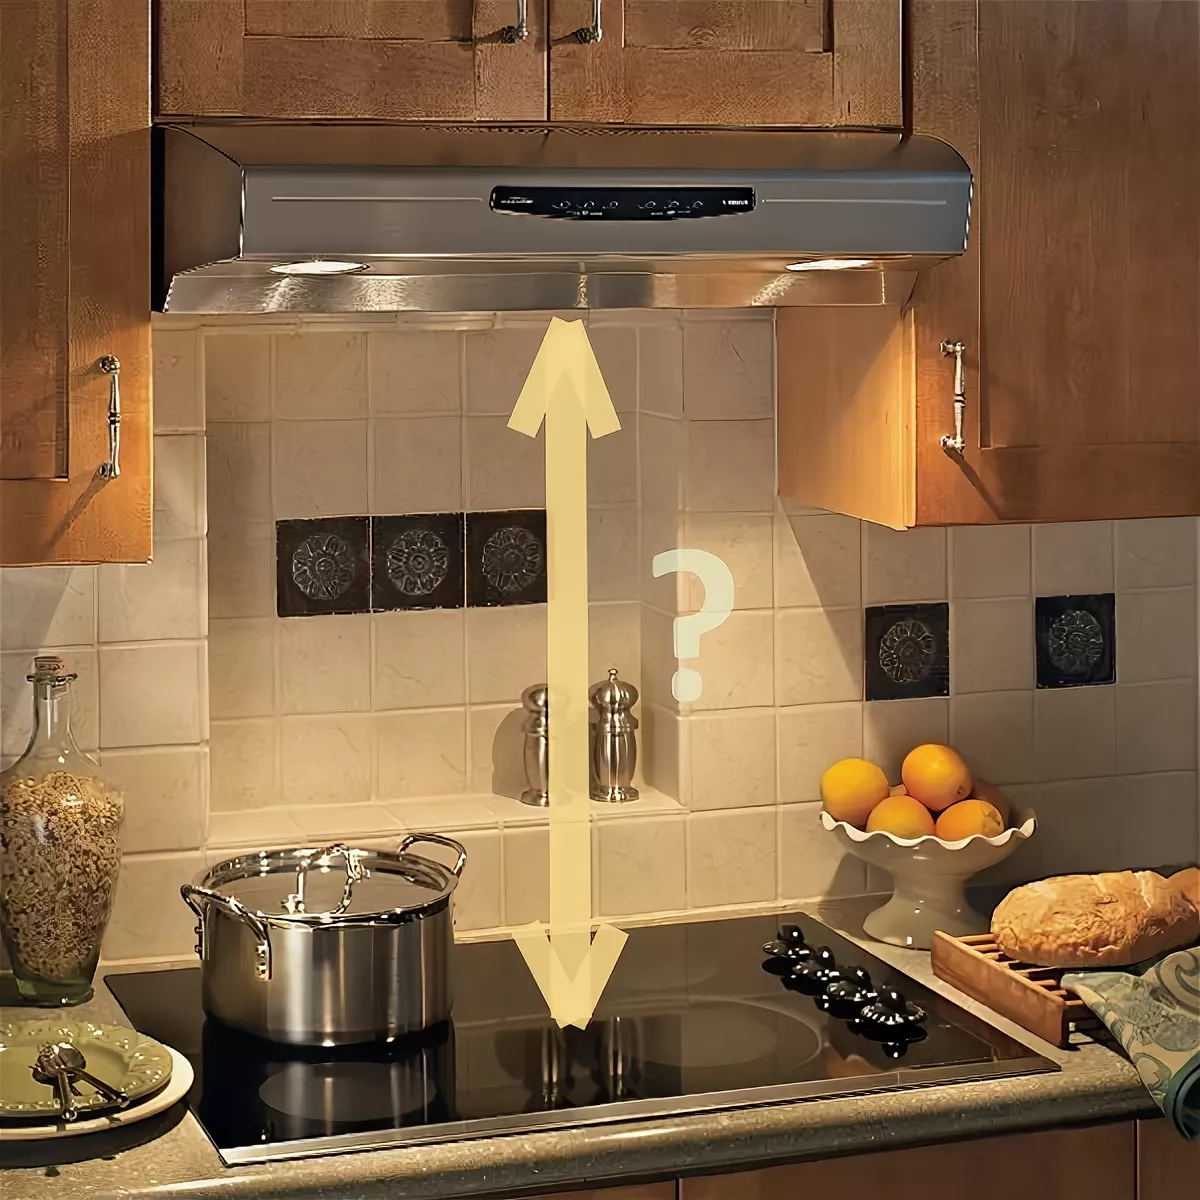 Как выбрать вытяжку для кухни над плитой?⭐ советы профессионалов как правильно выбрать вытяжку для кухни - гайд от home-tehno🔌